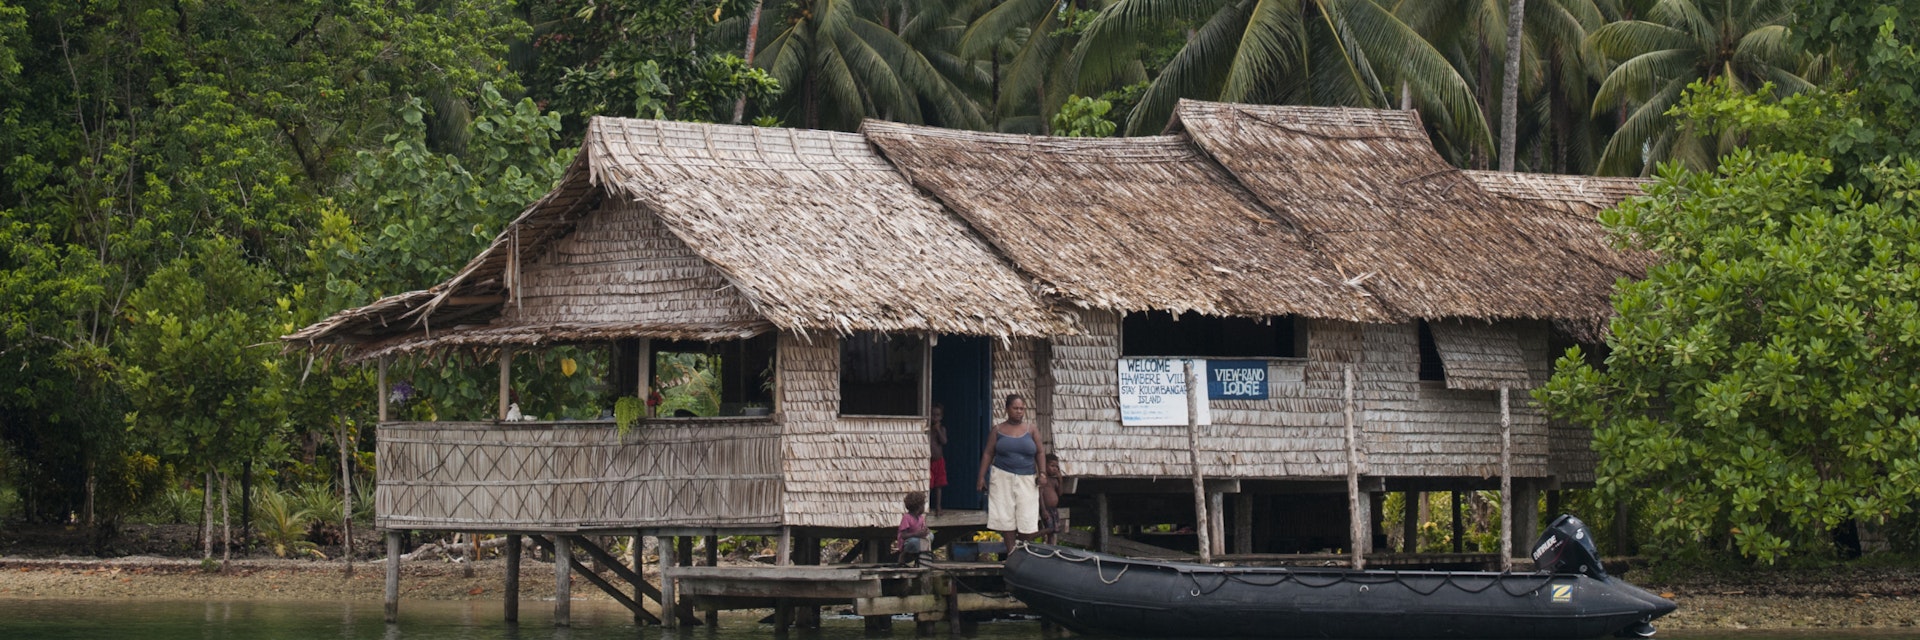 Village life on Kolombangara Island